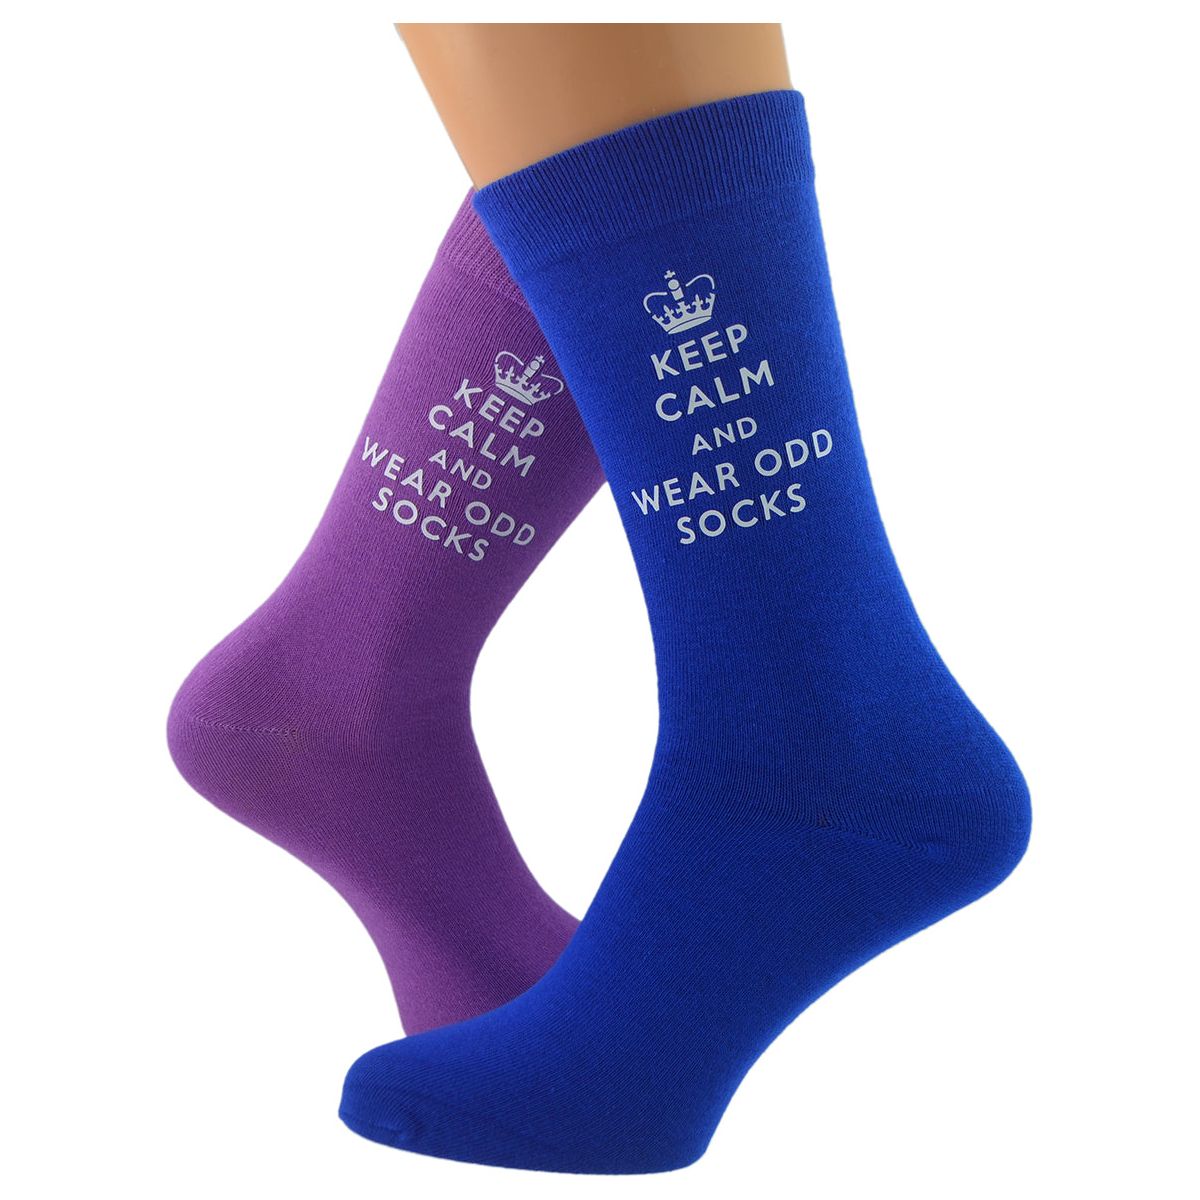 Keep Calm & Wear Odd Socks Mens Fun Novelty Socks - Ashton and Finch